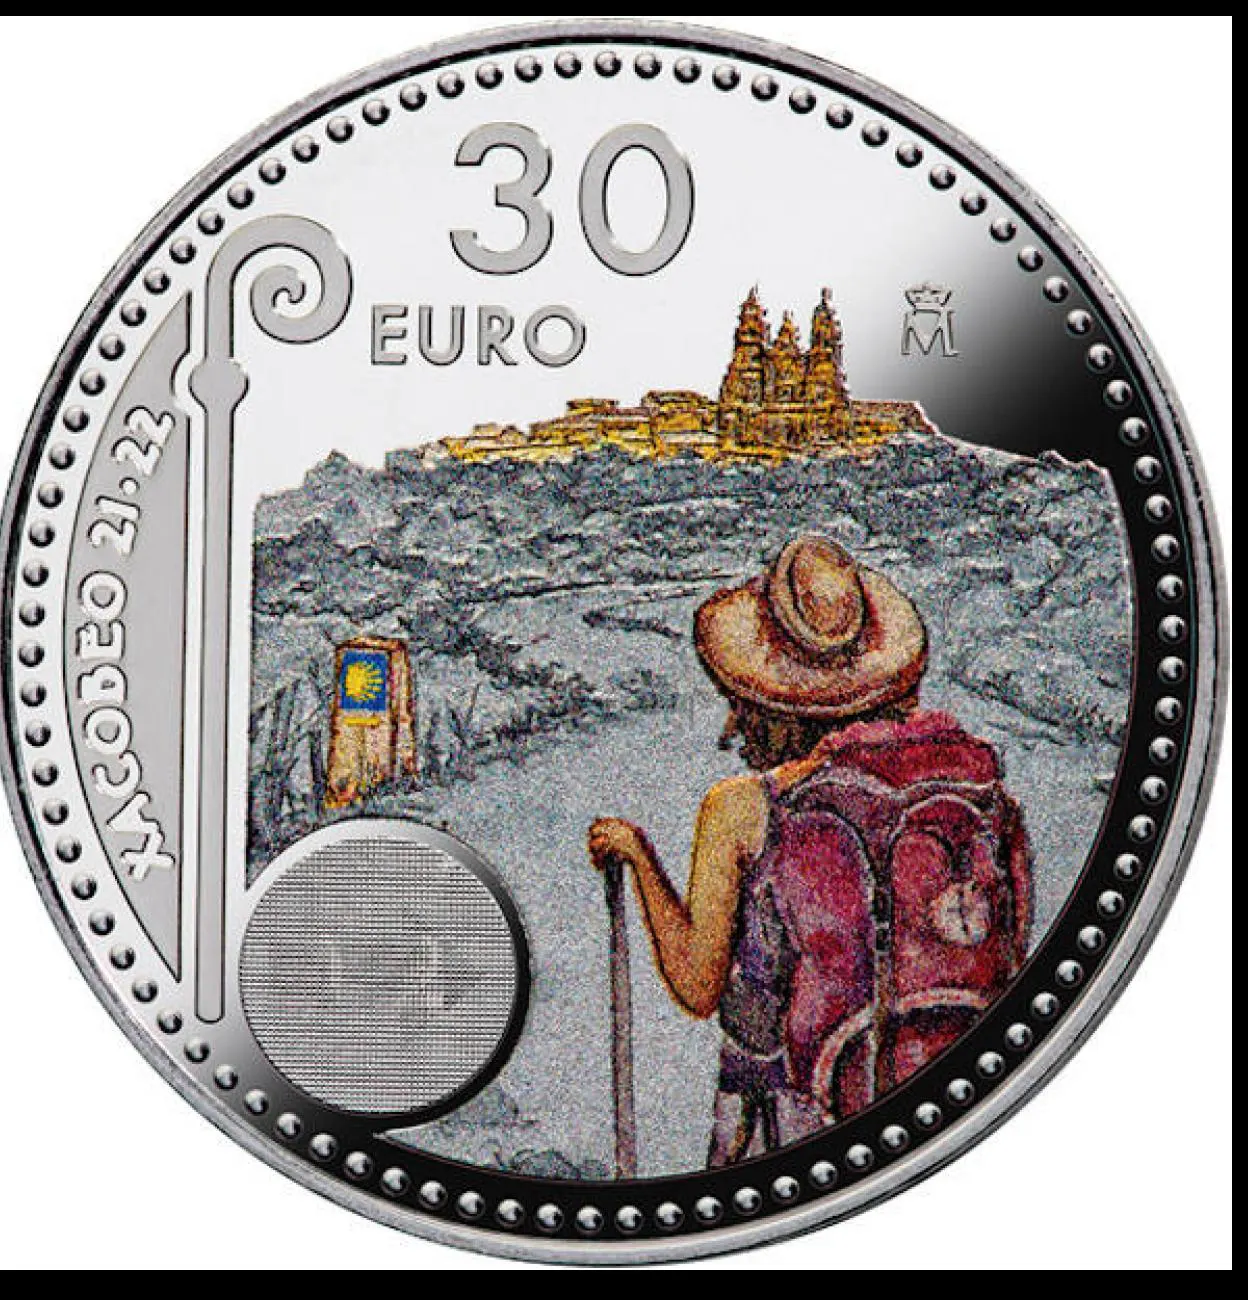 Así es la nueva moneda de plata de 10 euros 